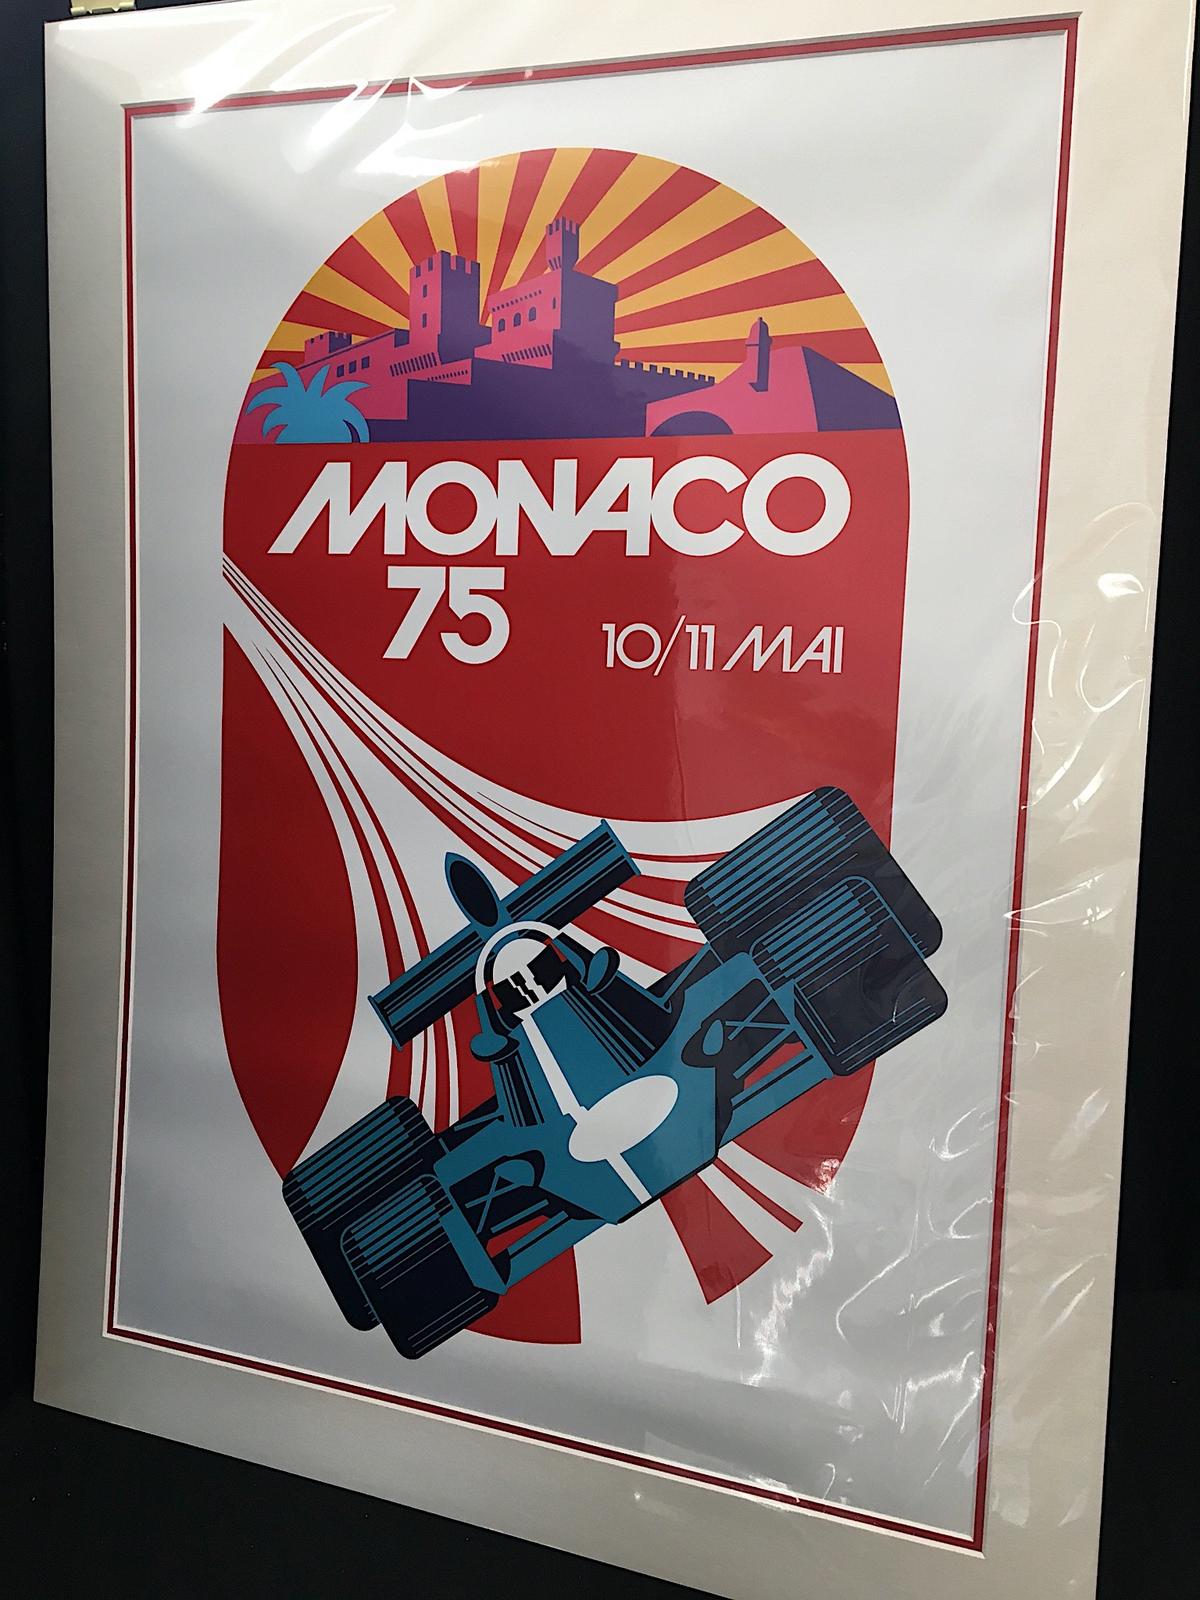 Monaco 1975 poster, mounted